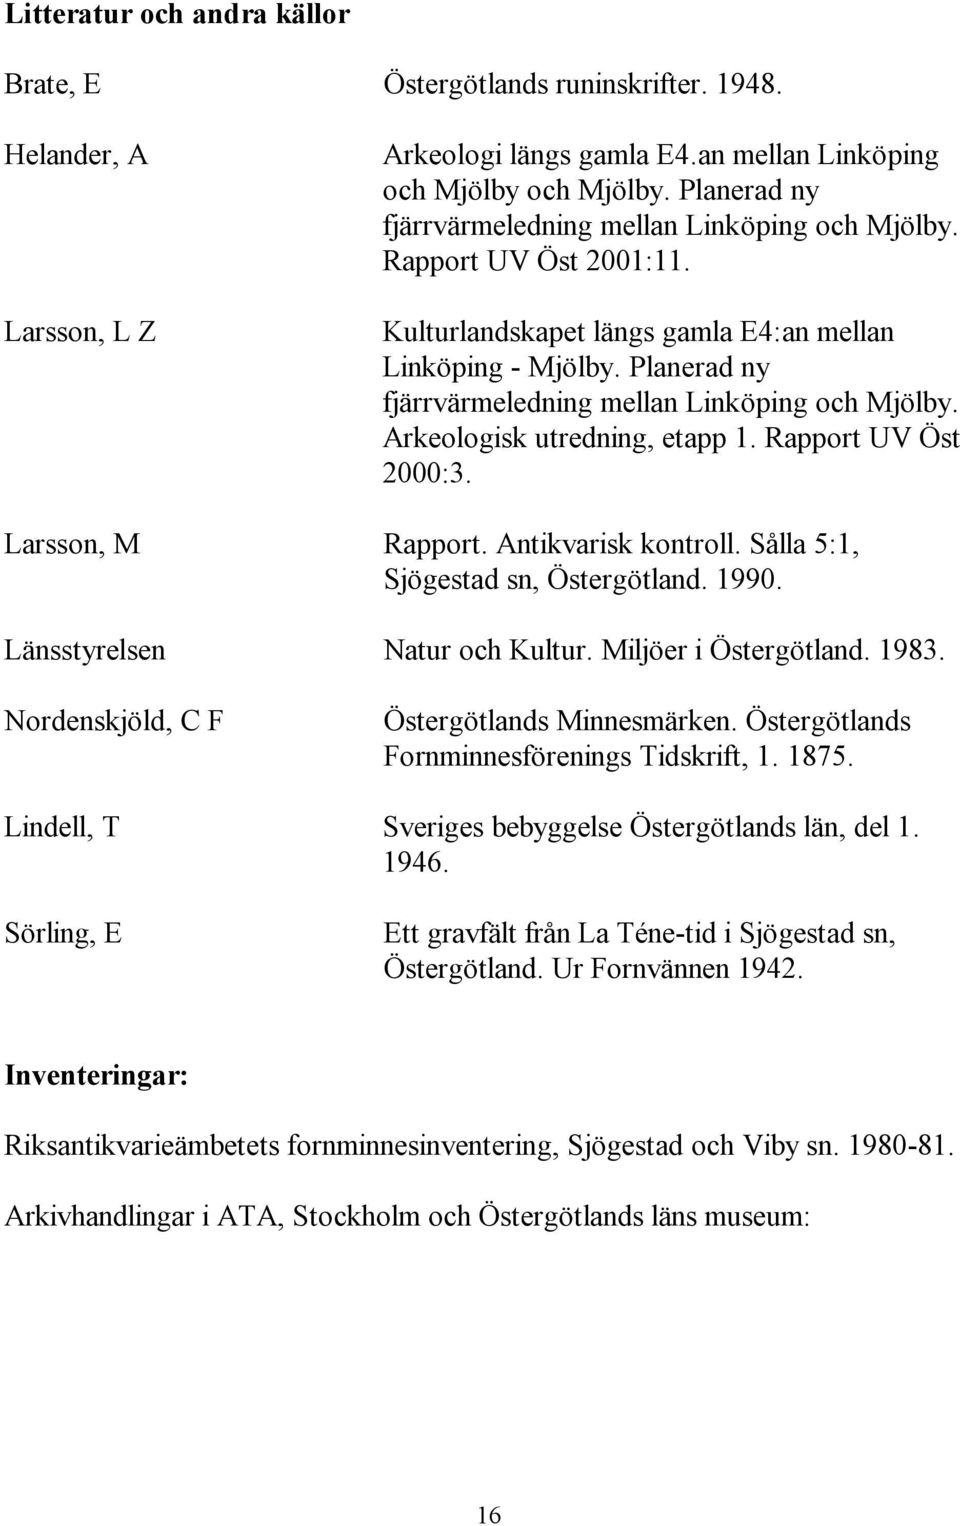 Planerad ny fjärrvärmeledning mellan Linköping och Mjölby. Arkeologisk utredning, etapp 1. Rapport UV Öst 2000:3. Larsson, M Rapport. Antikvarisk kontroll. Sålla 5:1, Sjögestad sn, Östergötland. 1990.